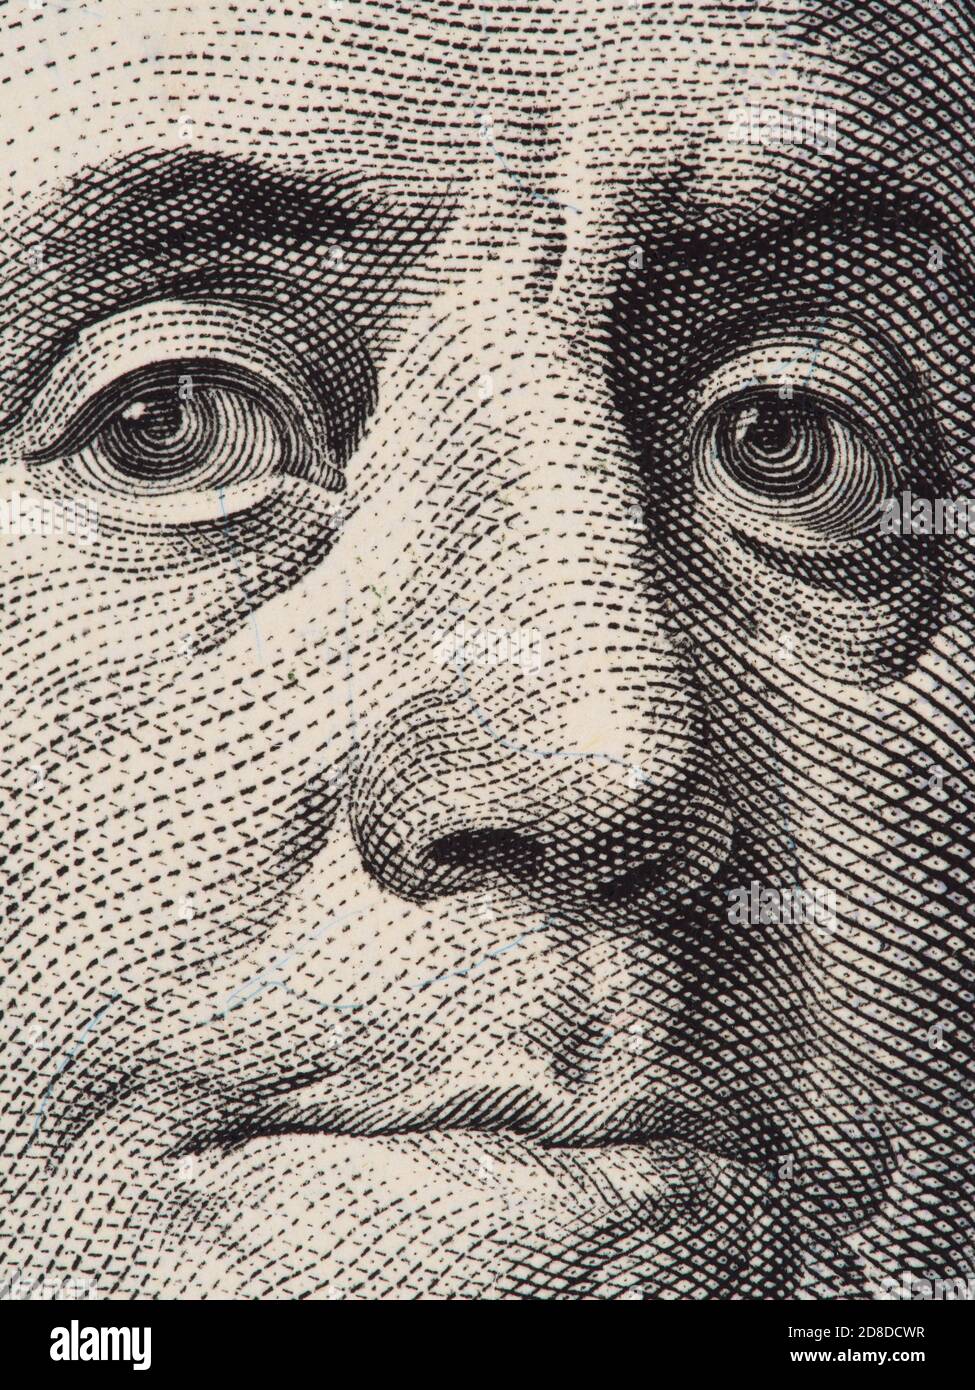 Benjamin Franklin Portrait extrem Nahaufnahme Makro auf dem US 100 Dollar-Schein, Serie 2013 Stockfoto